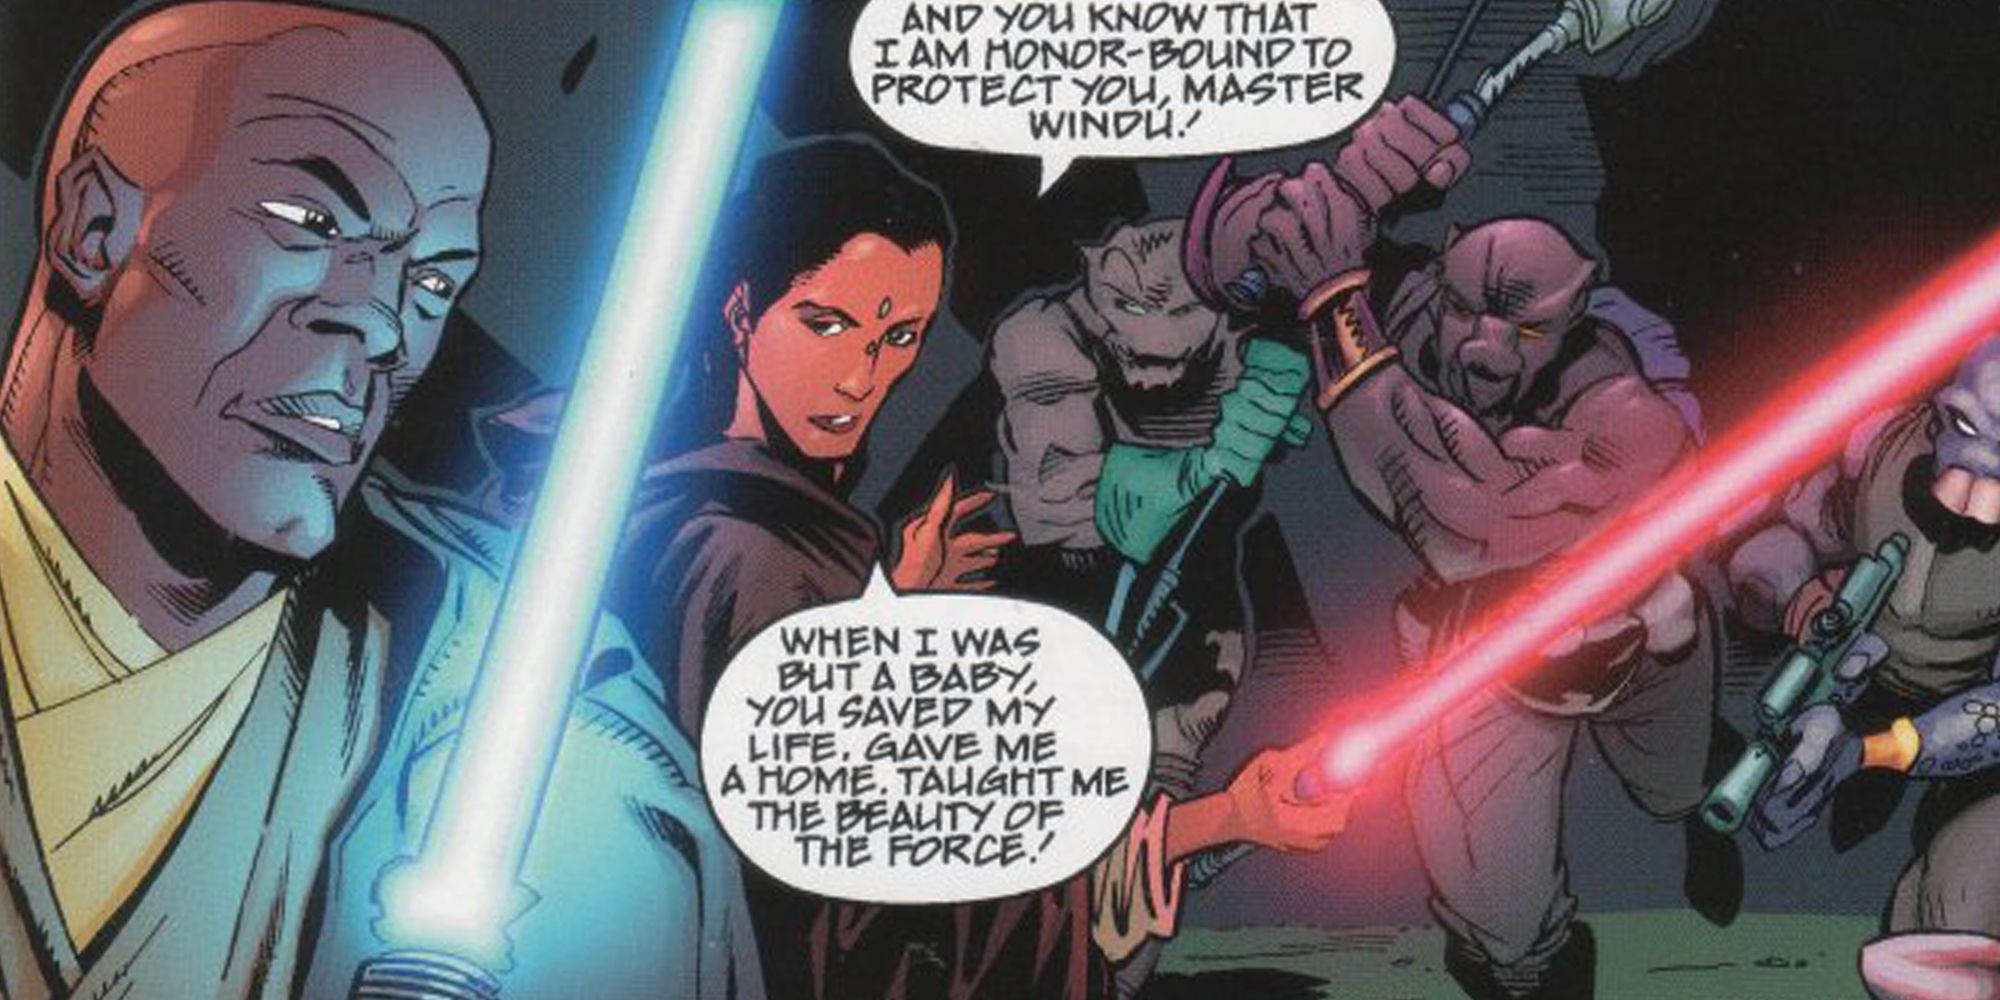 Depa Billaba wields a red lightsaber in Star Wars